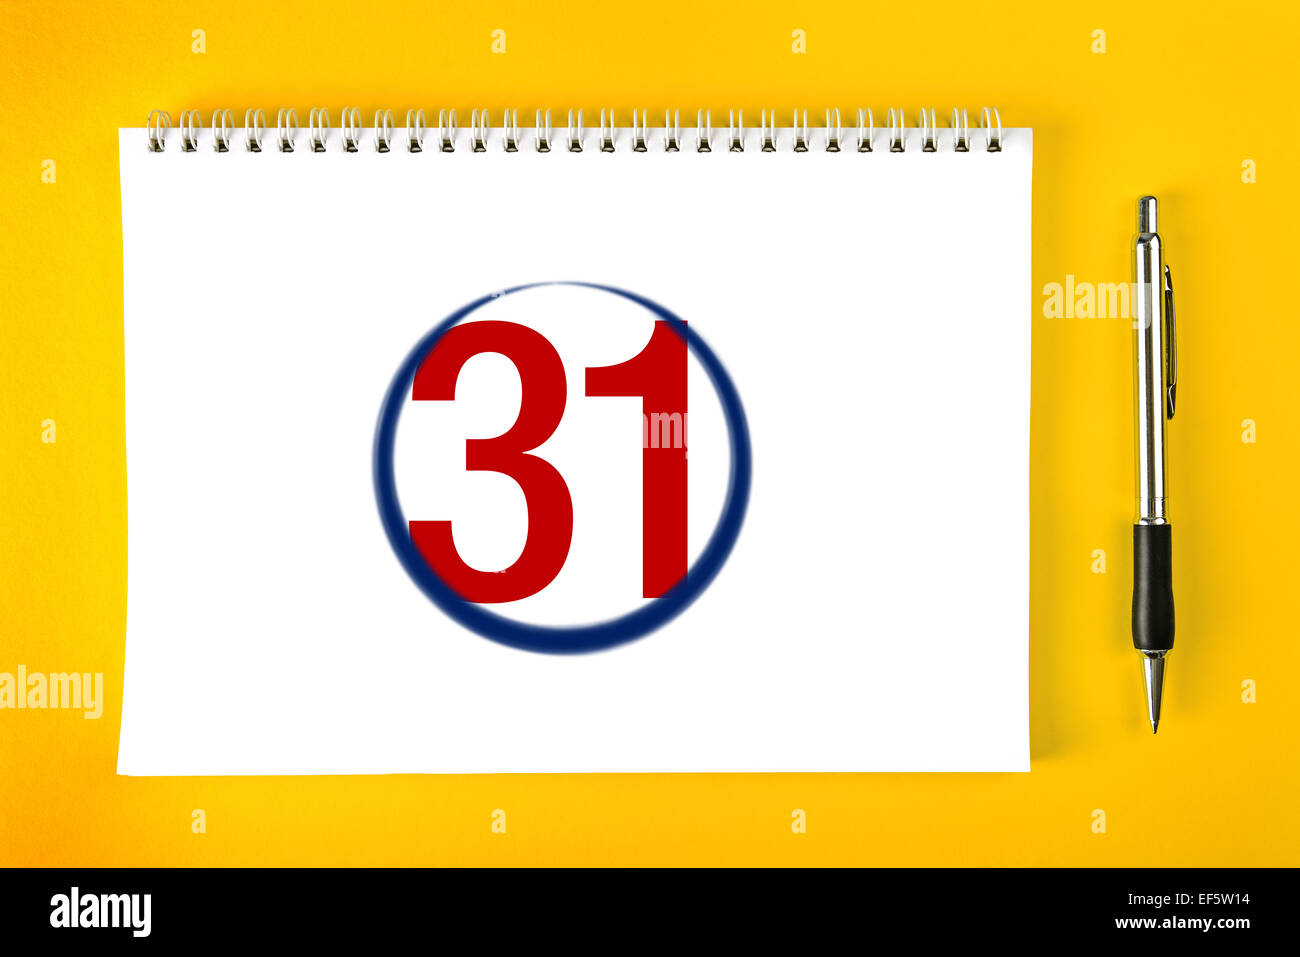 Fine del mese, Carta pagina del calendario con rilegatura a spirale con corsa a matita attorno all'ultimo giorno del mese. Foto Stock